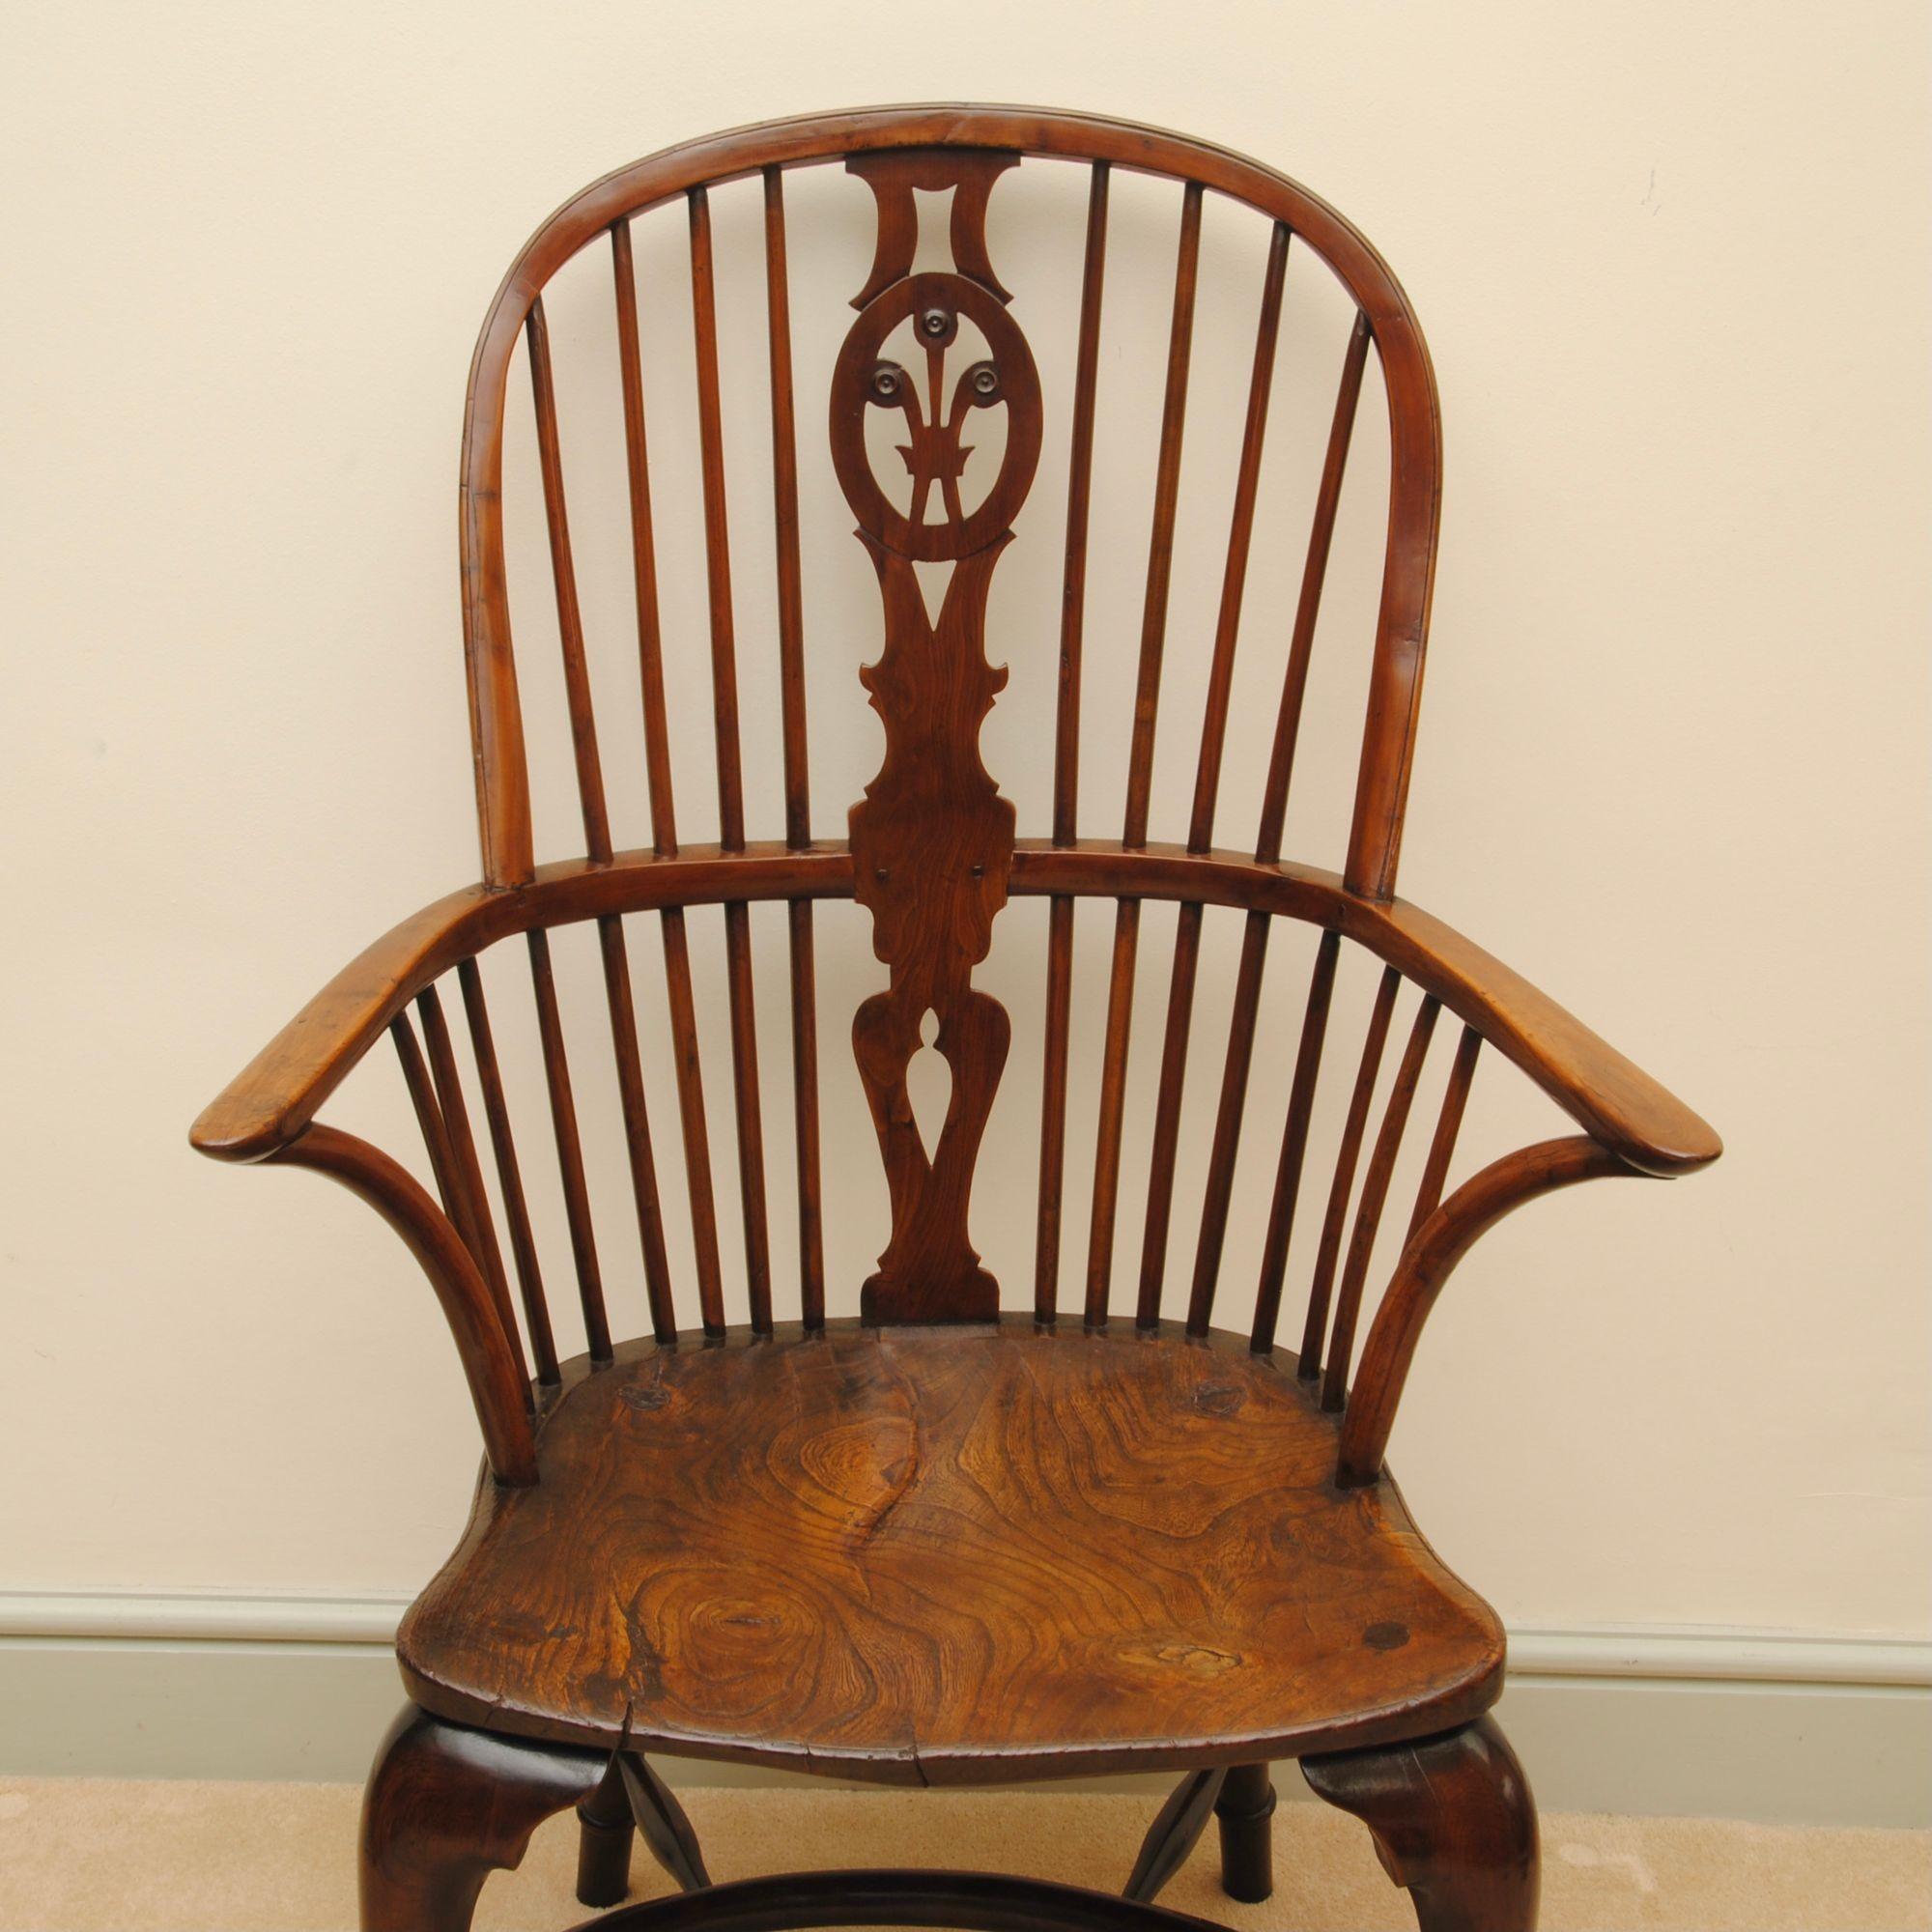 Un très grand exemple de fauteuil Windsor en bois d'if de la vallée de la Tamise par Prior of Uxbridge, estampillé deux fois sur le bord de l'assise. Le dossier est orné de plumes de prince de Galles, les pieds cabriole avant sont munis de pieds